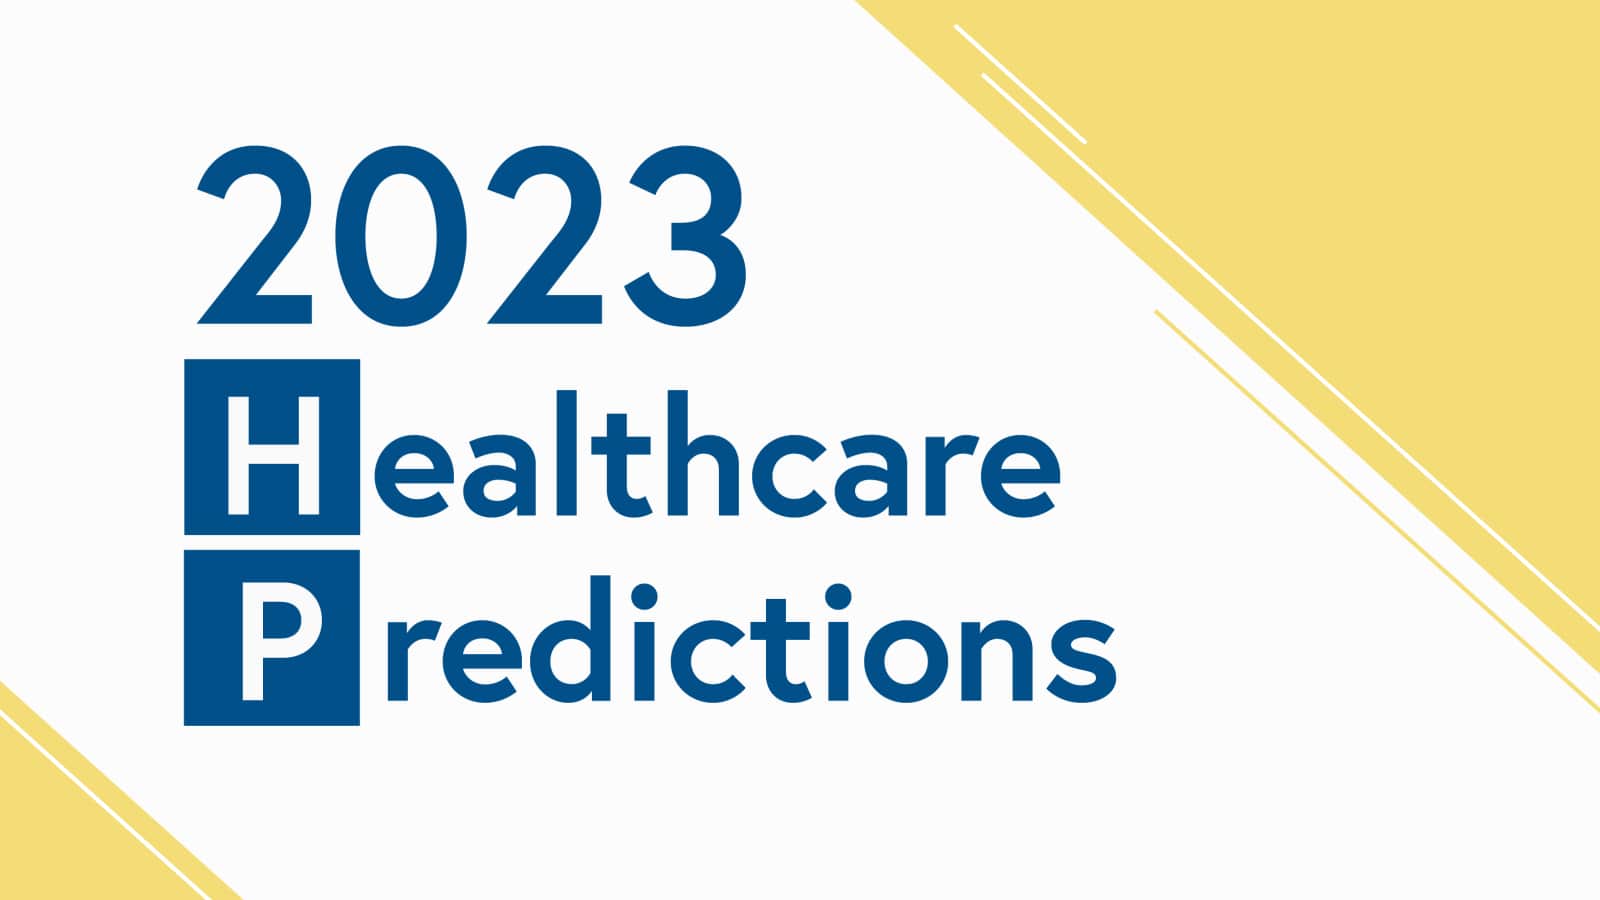 2023 healthcare predictions